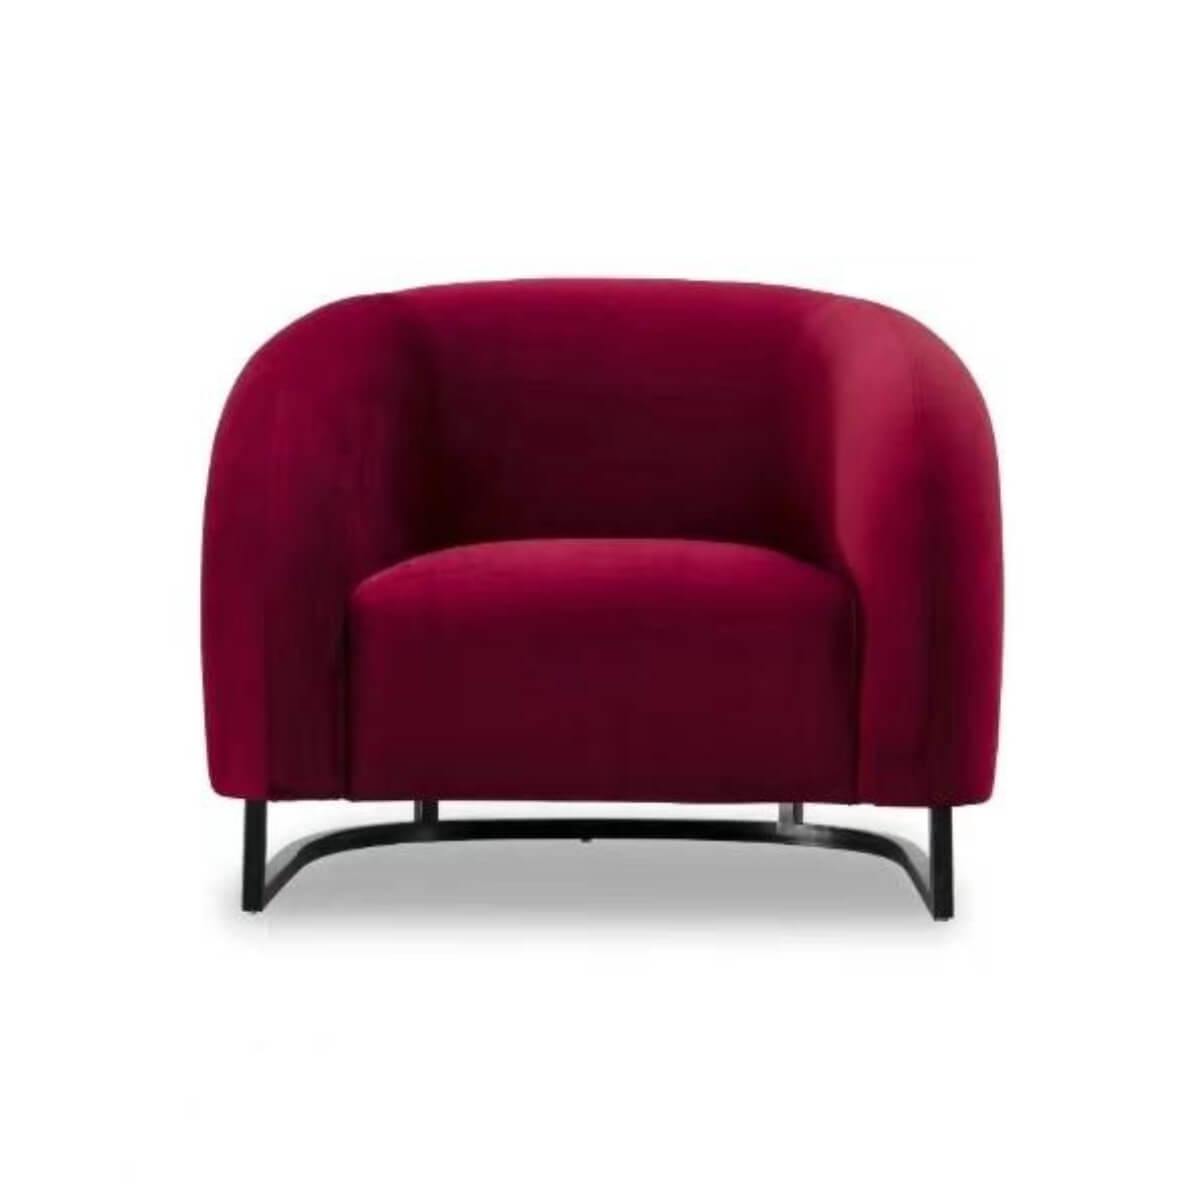 VelvetVogue Luxury Velvet Leisure Lounge Chair